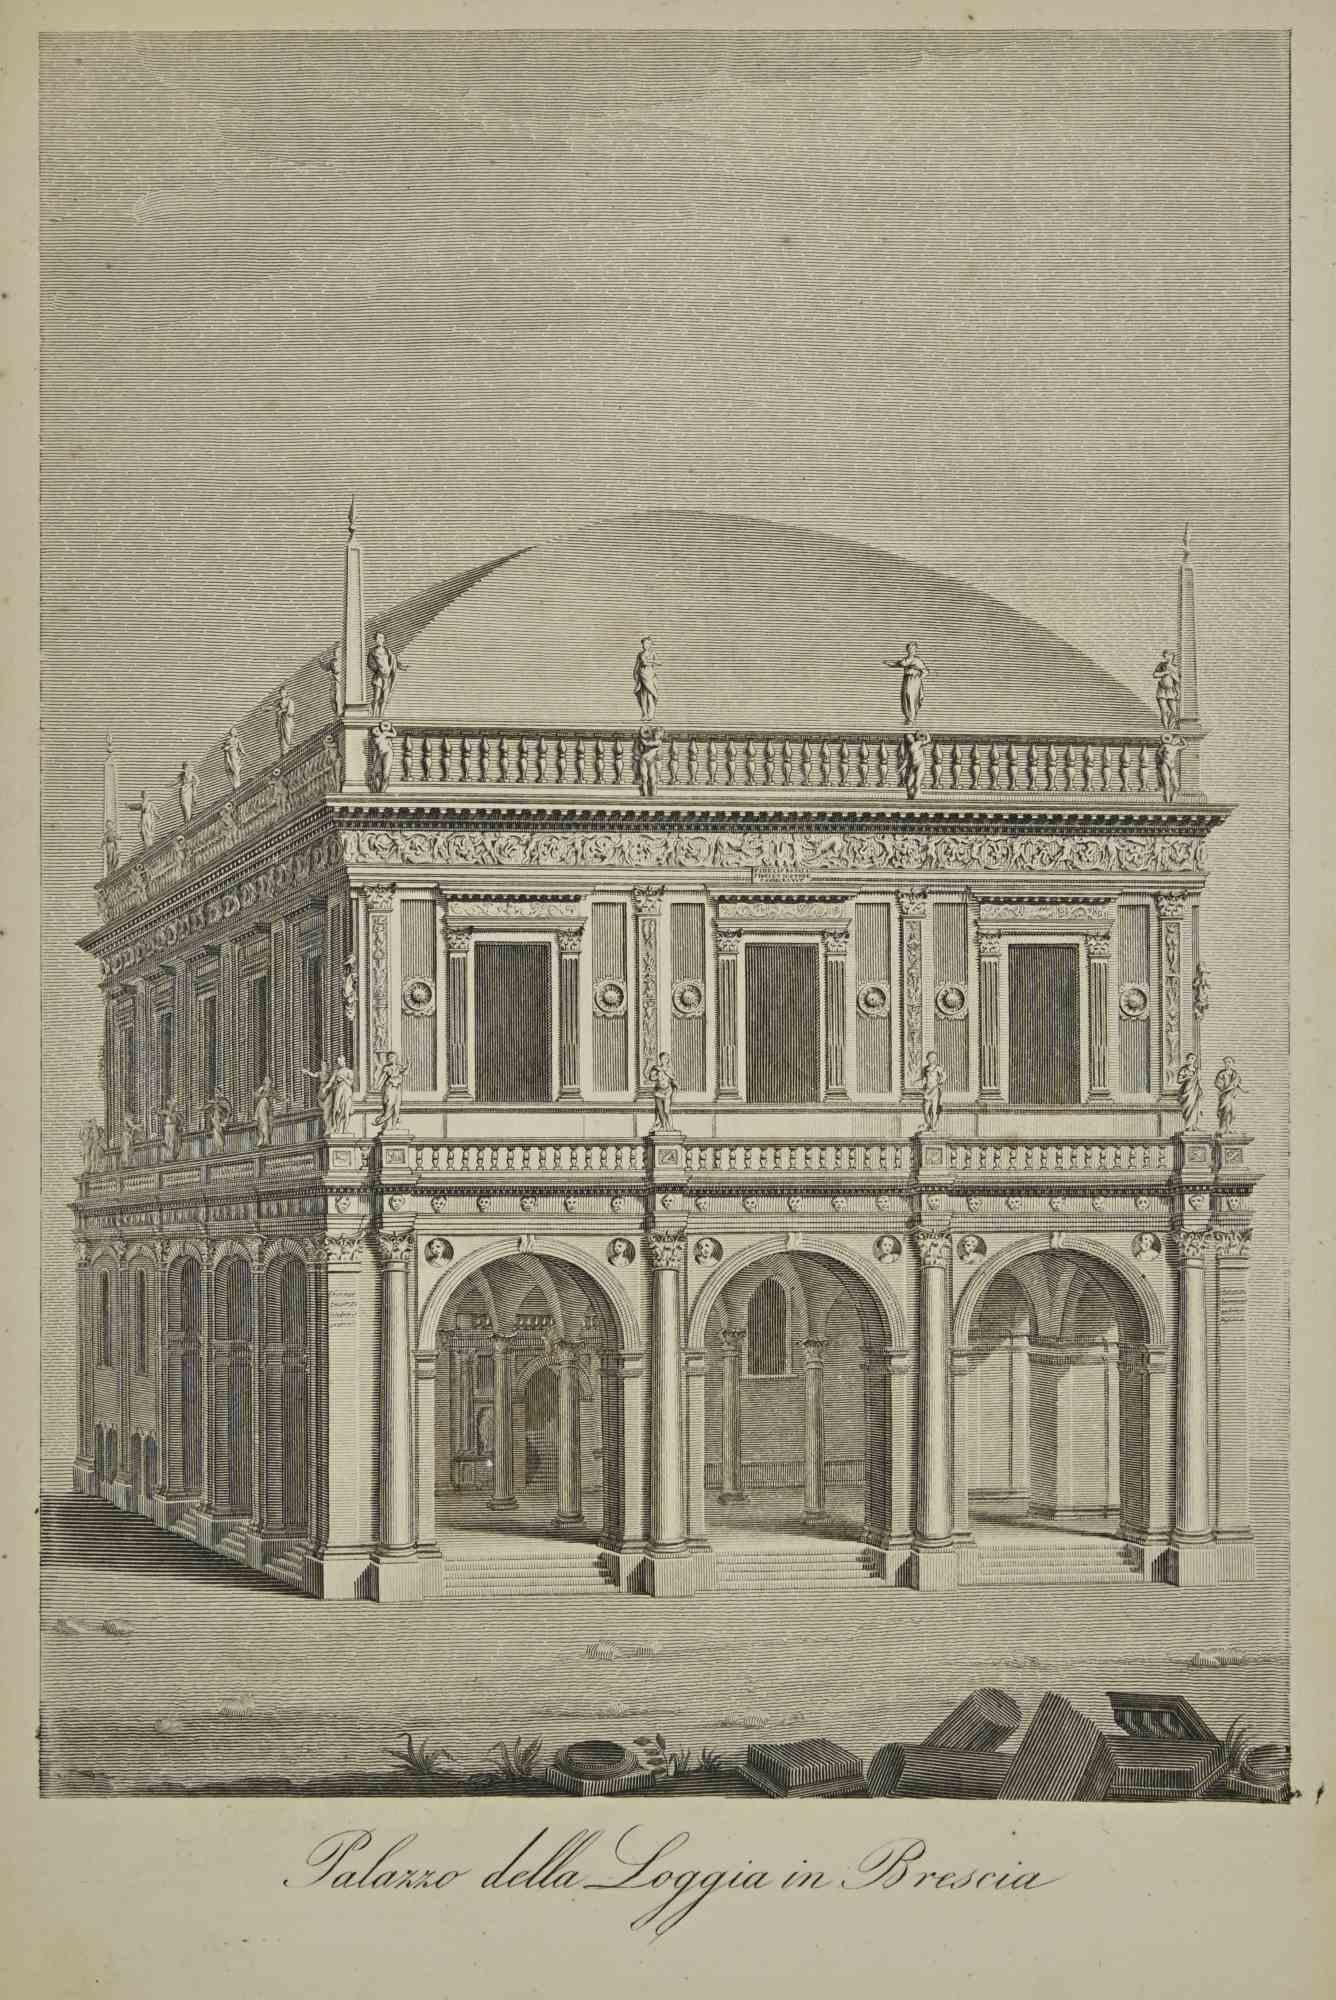 Various Artists Landscape Print - Uses and Customs - Palazzo della Loggia in Brescia - Lithograph - 1862